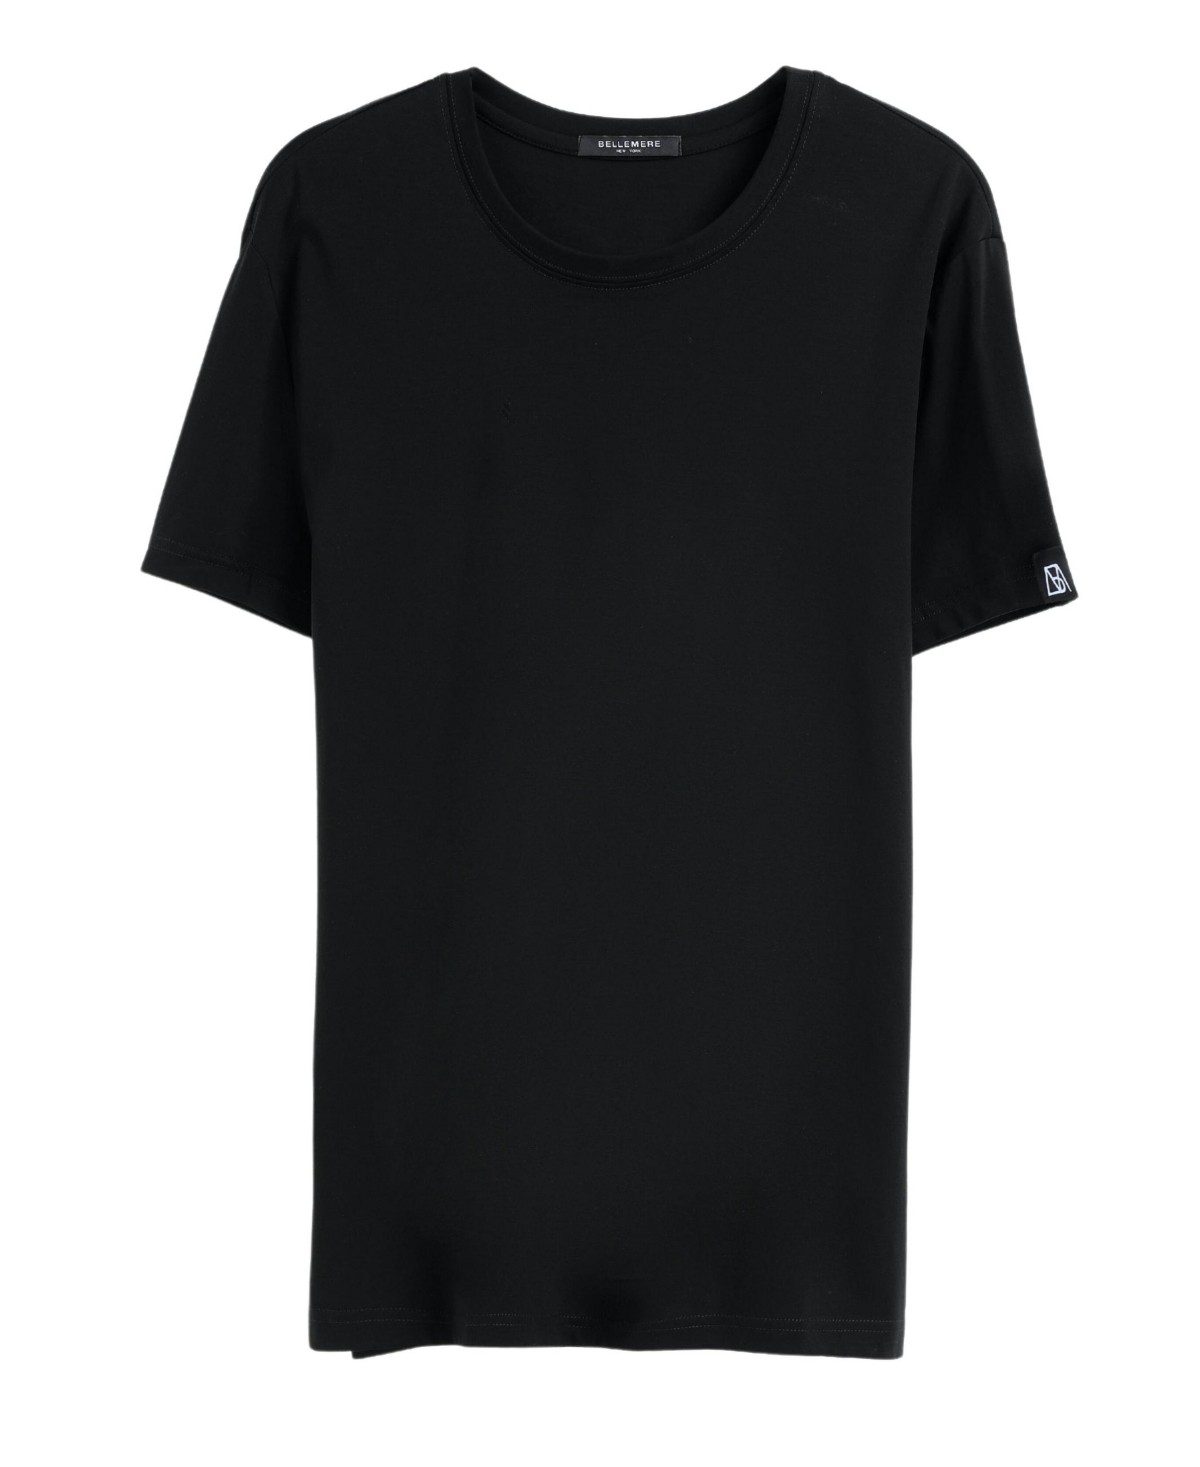 Bellemere Men's Crew-Neck Cotton T-Shirt - Black